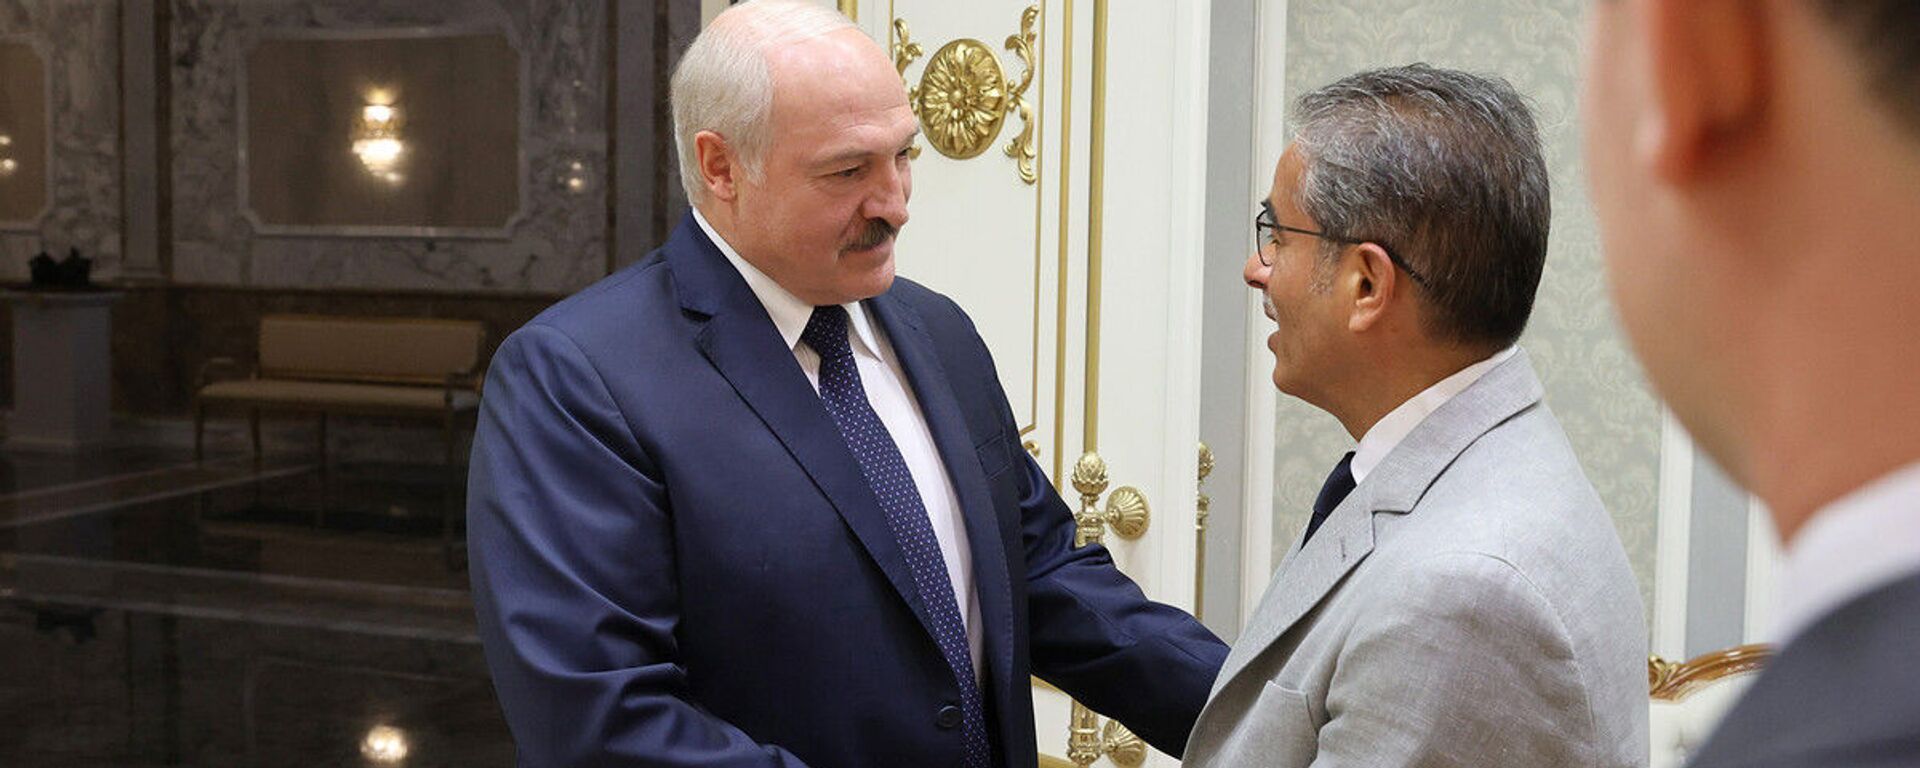 Александр Лукашенко 28 июня встретился с исполнительным директором компании Emaar Properties Мухаммедом аль-Аббаром - Sputnik Беларусь, 1920, 28.06.2021